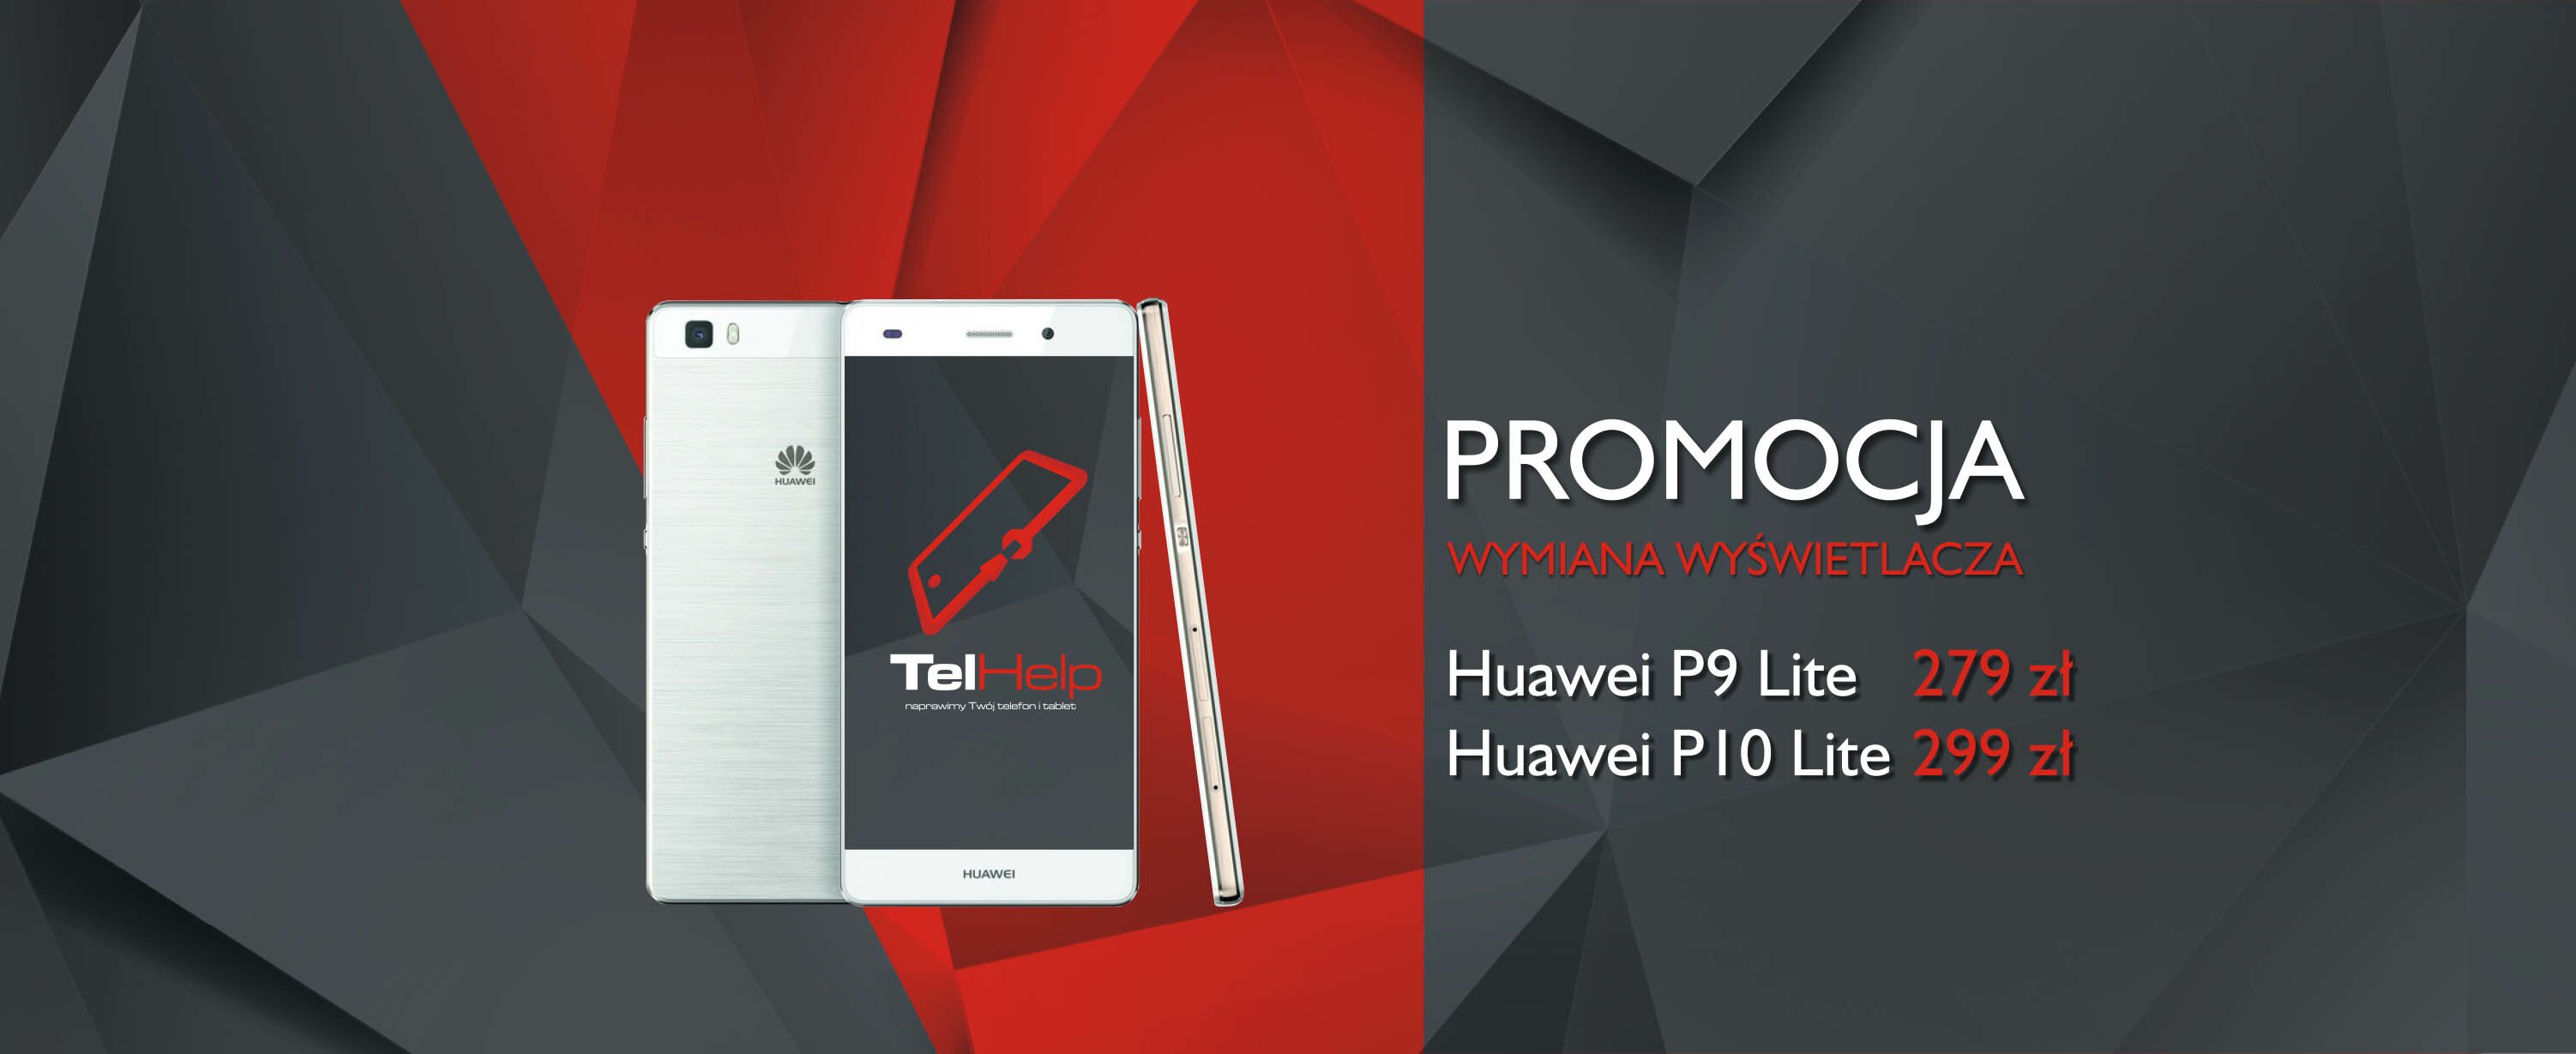 Tel_help_slider_promocja_Huawei_P9_P10_04_2018